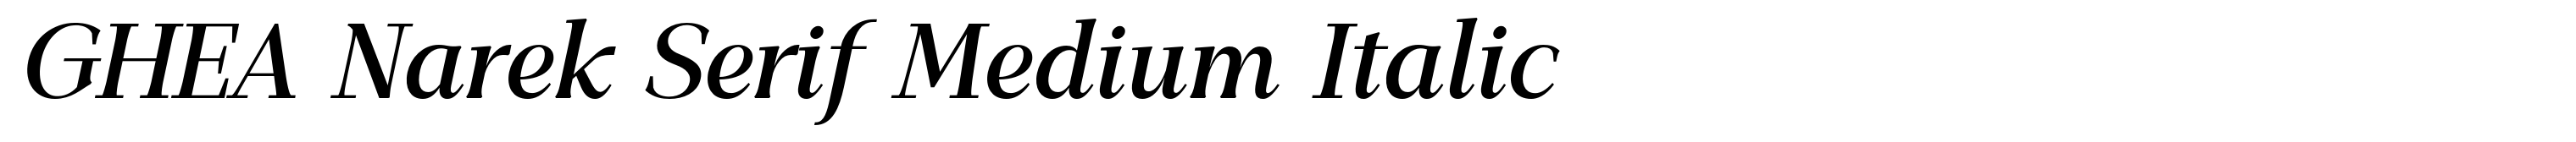 GHEA Narek Serif Medium Italic